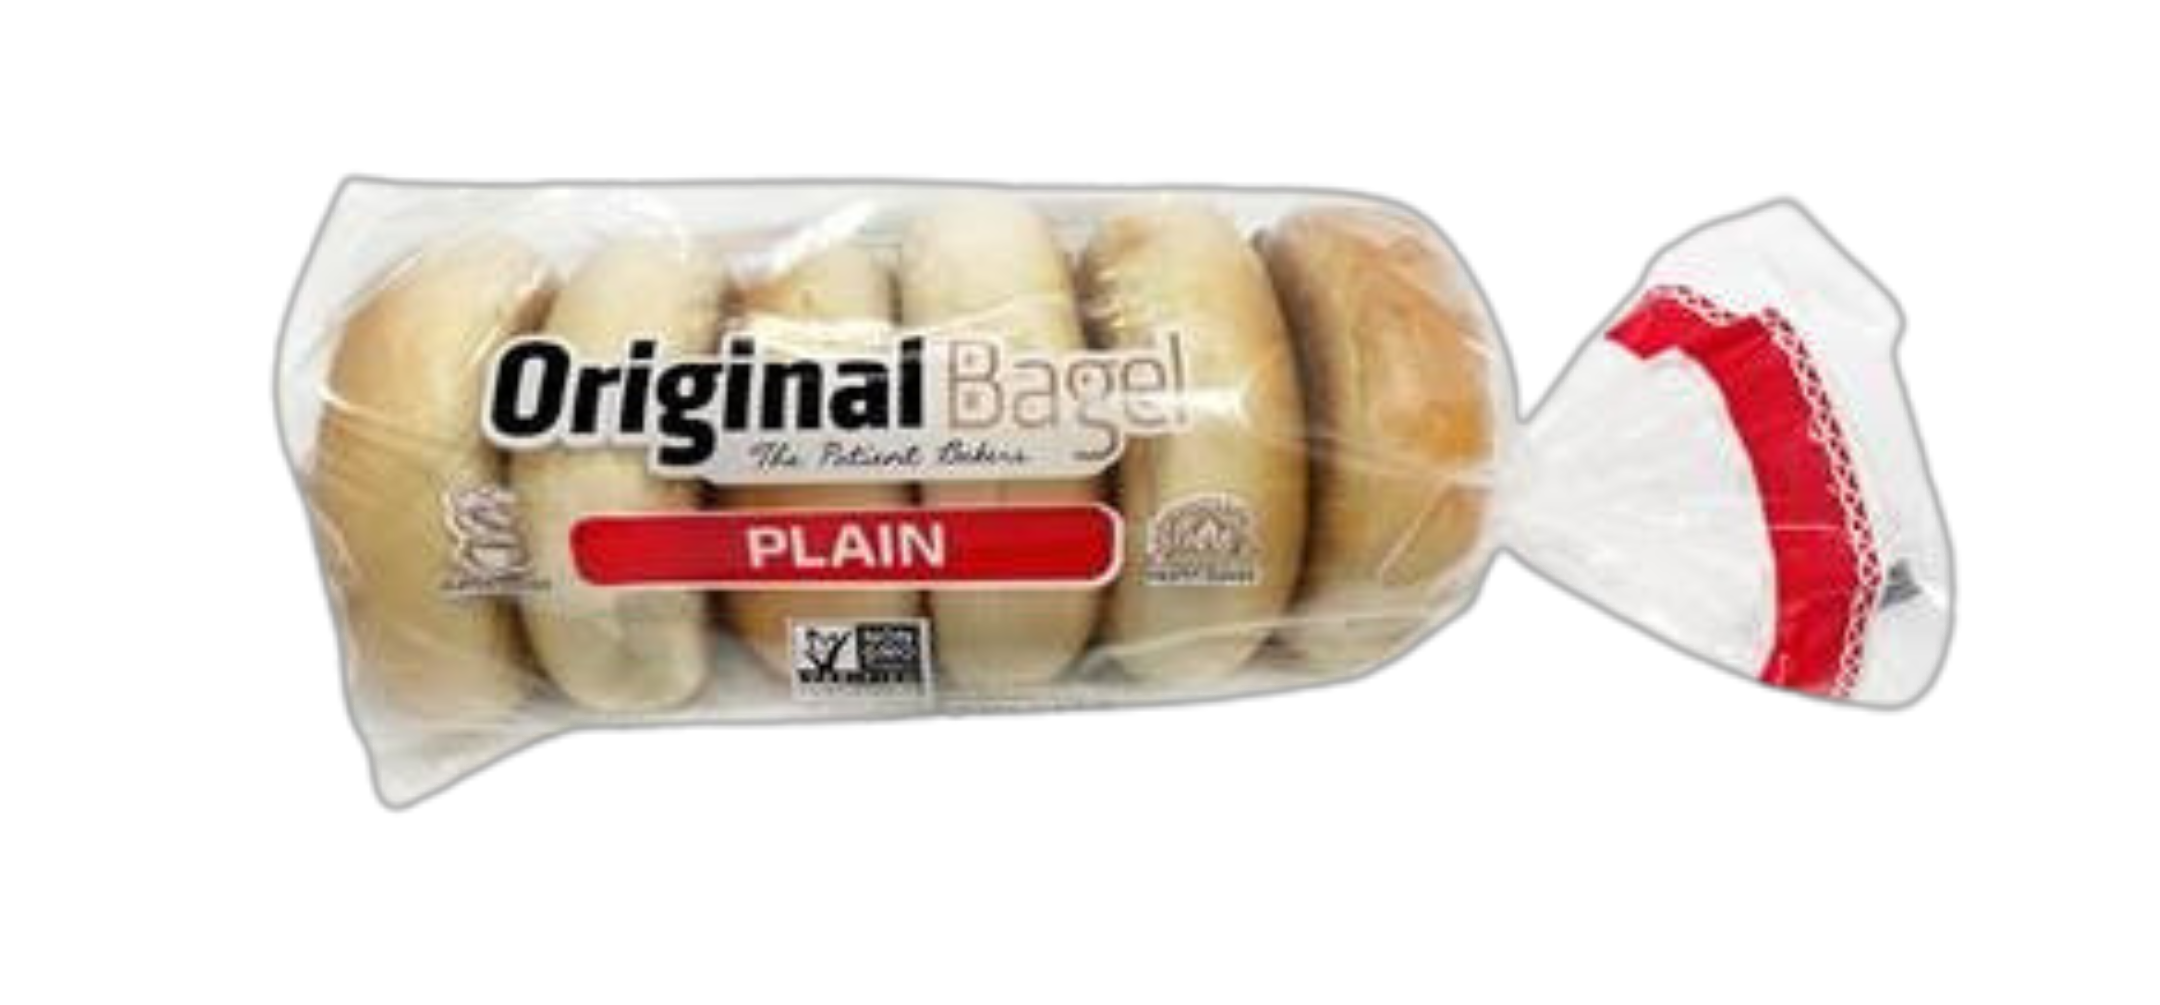 Bag of plain Original Bagels